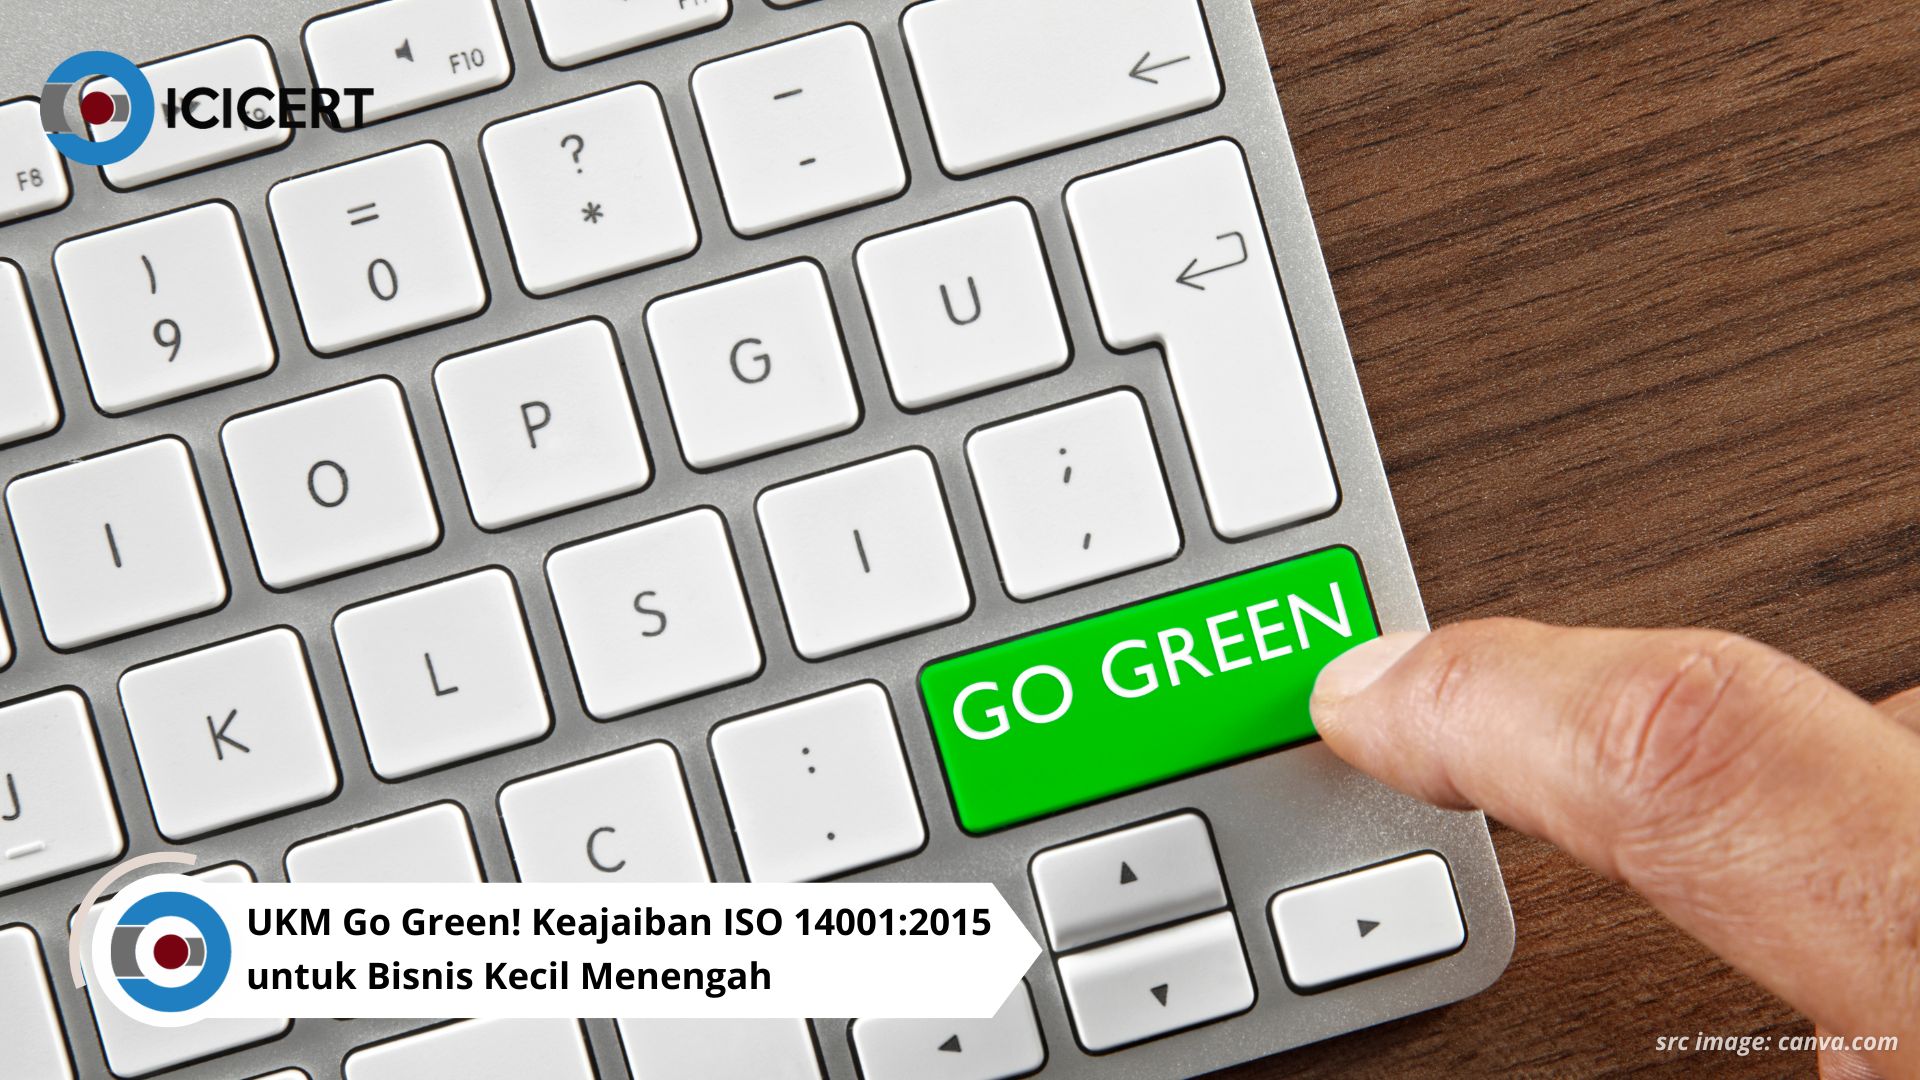 UKM Go Green! Keajaiban ISO 14001:2015 untuk Bisnis Kecil Menengah